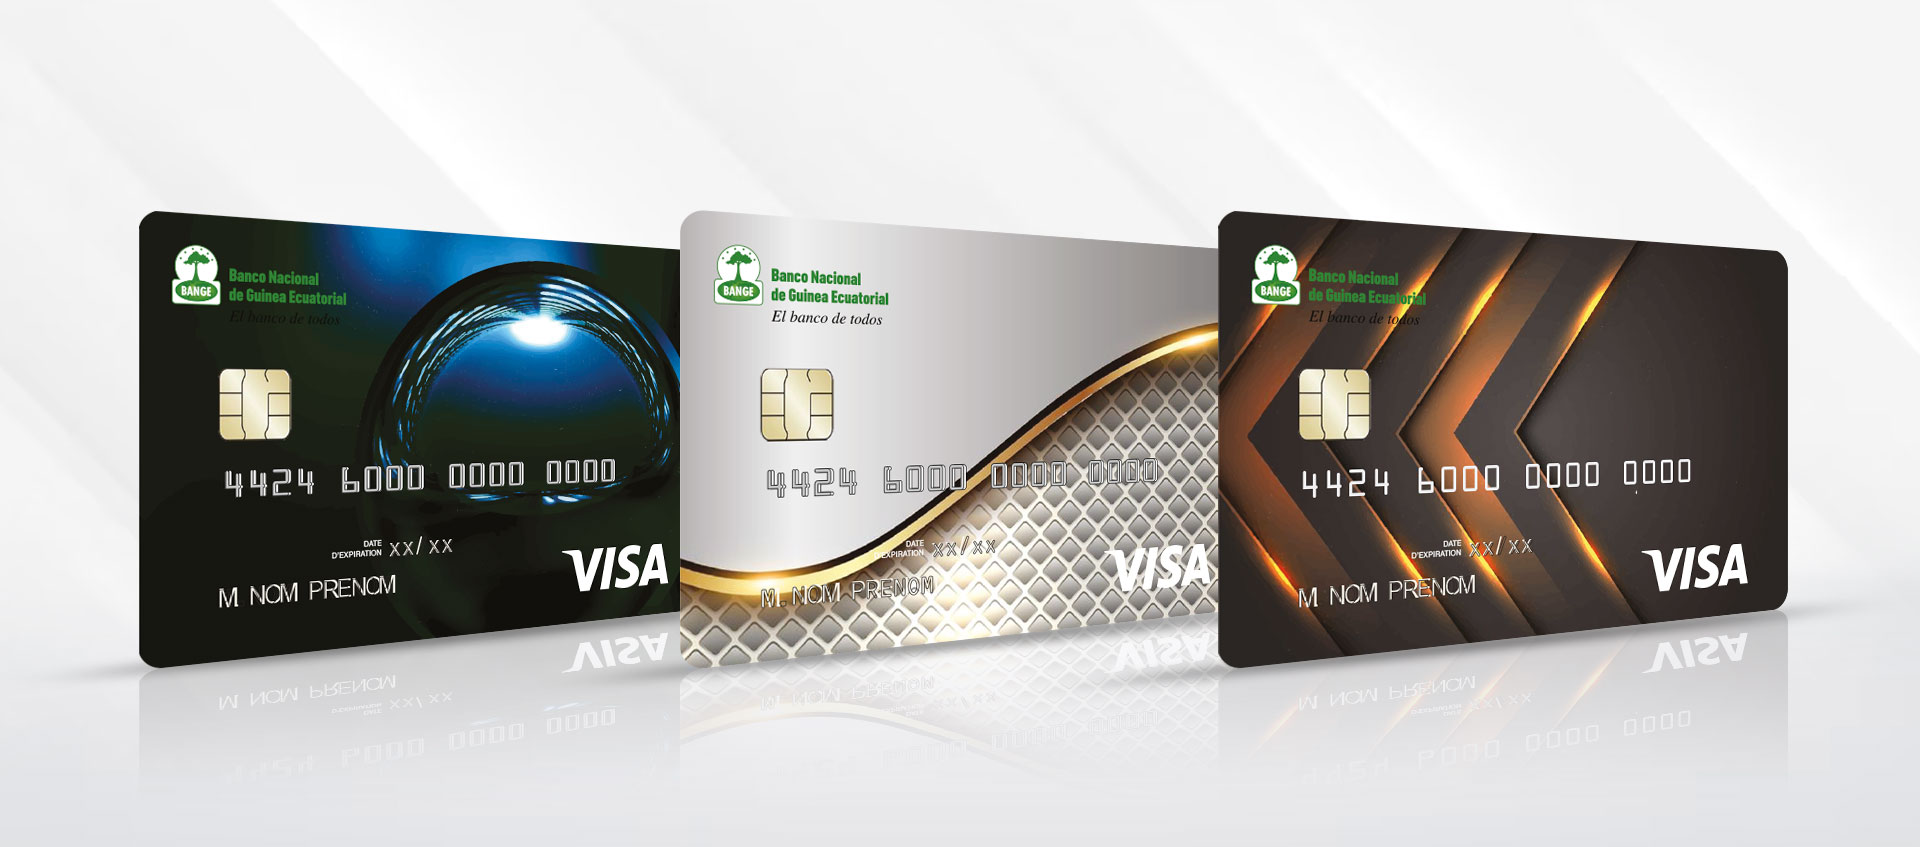 Bange-Bank-Guinea-Ecuatorial-tarjetas-visa